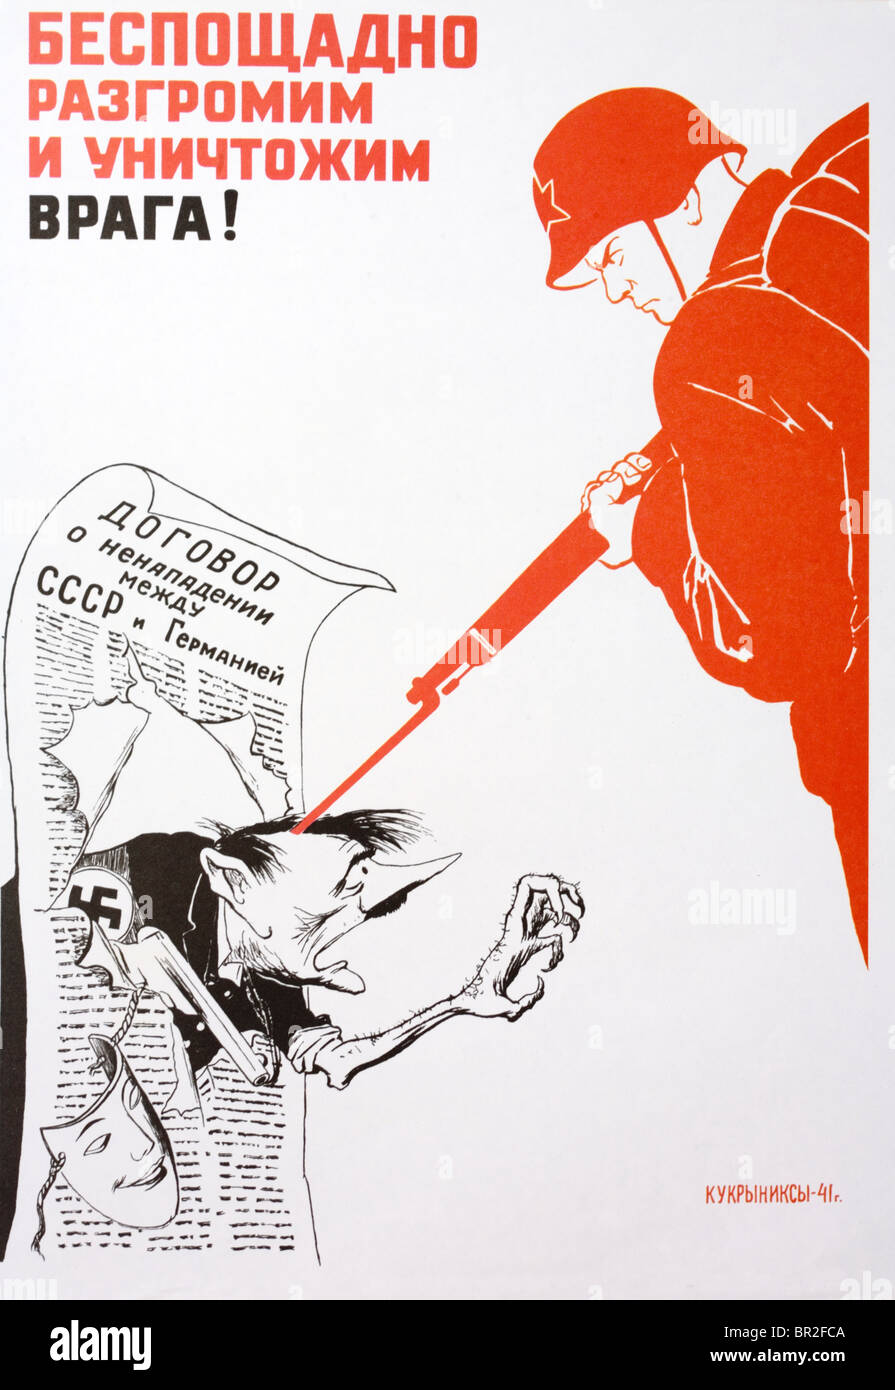 Poster raffigurante una pistola artigliato wielding Hitler rottura attraverso il nazista patto sovietica essendo respinto da un soldato sovietico. Foto Stock